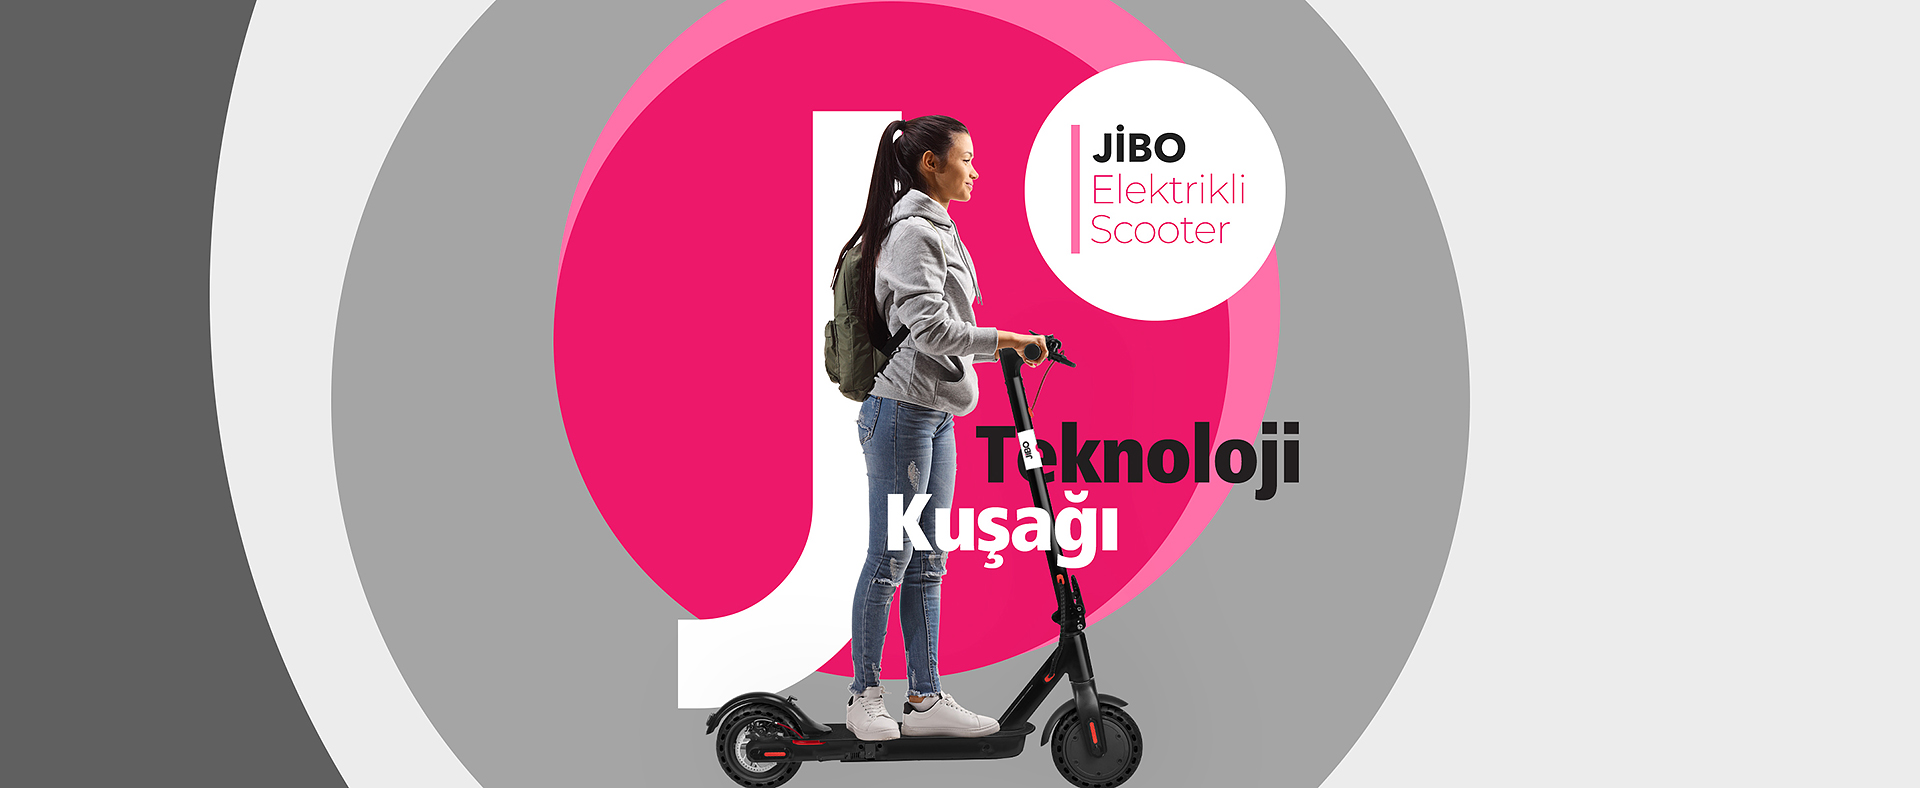 Jibo Elektrikli Scooter